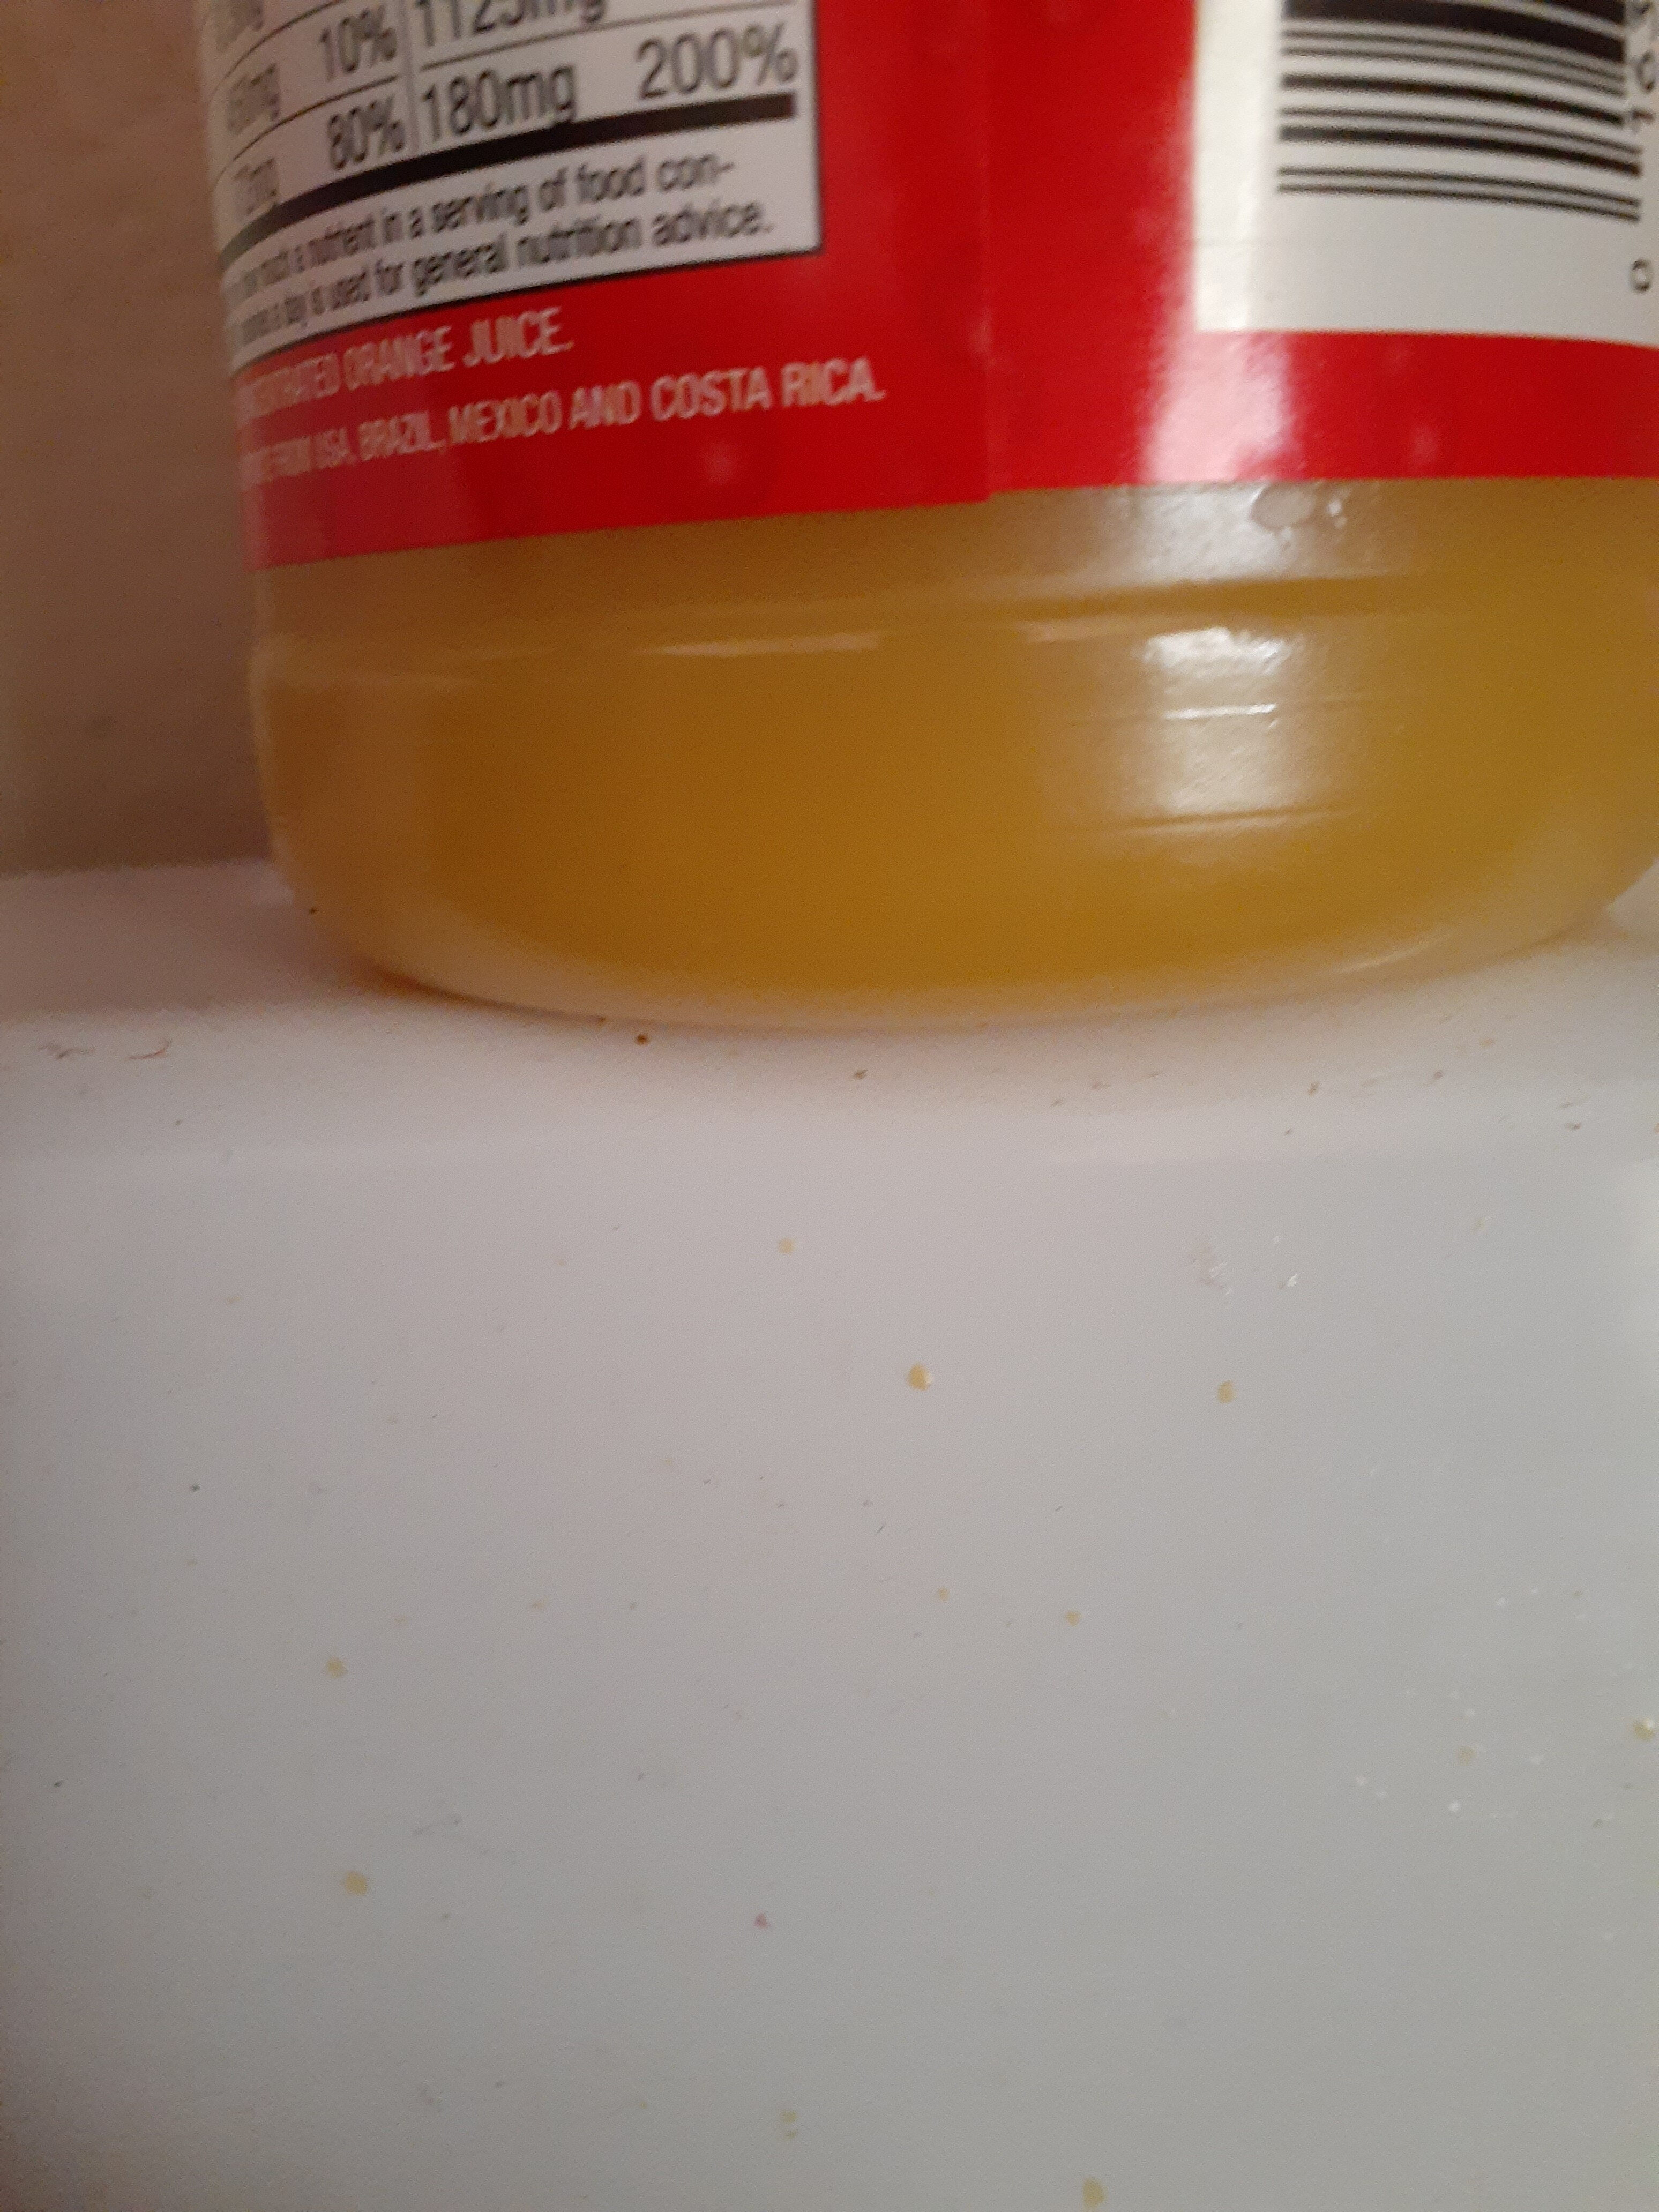 Donald Duck Orange Juice - Ingredients